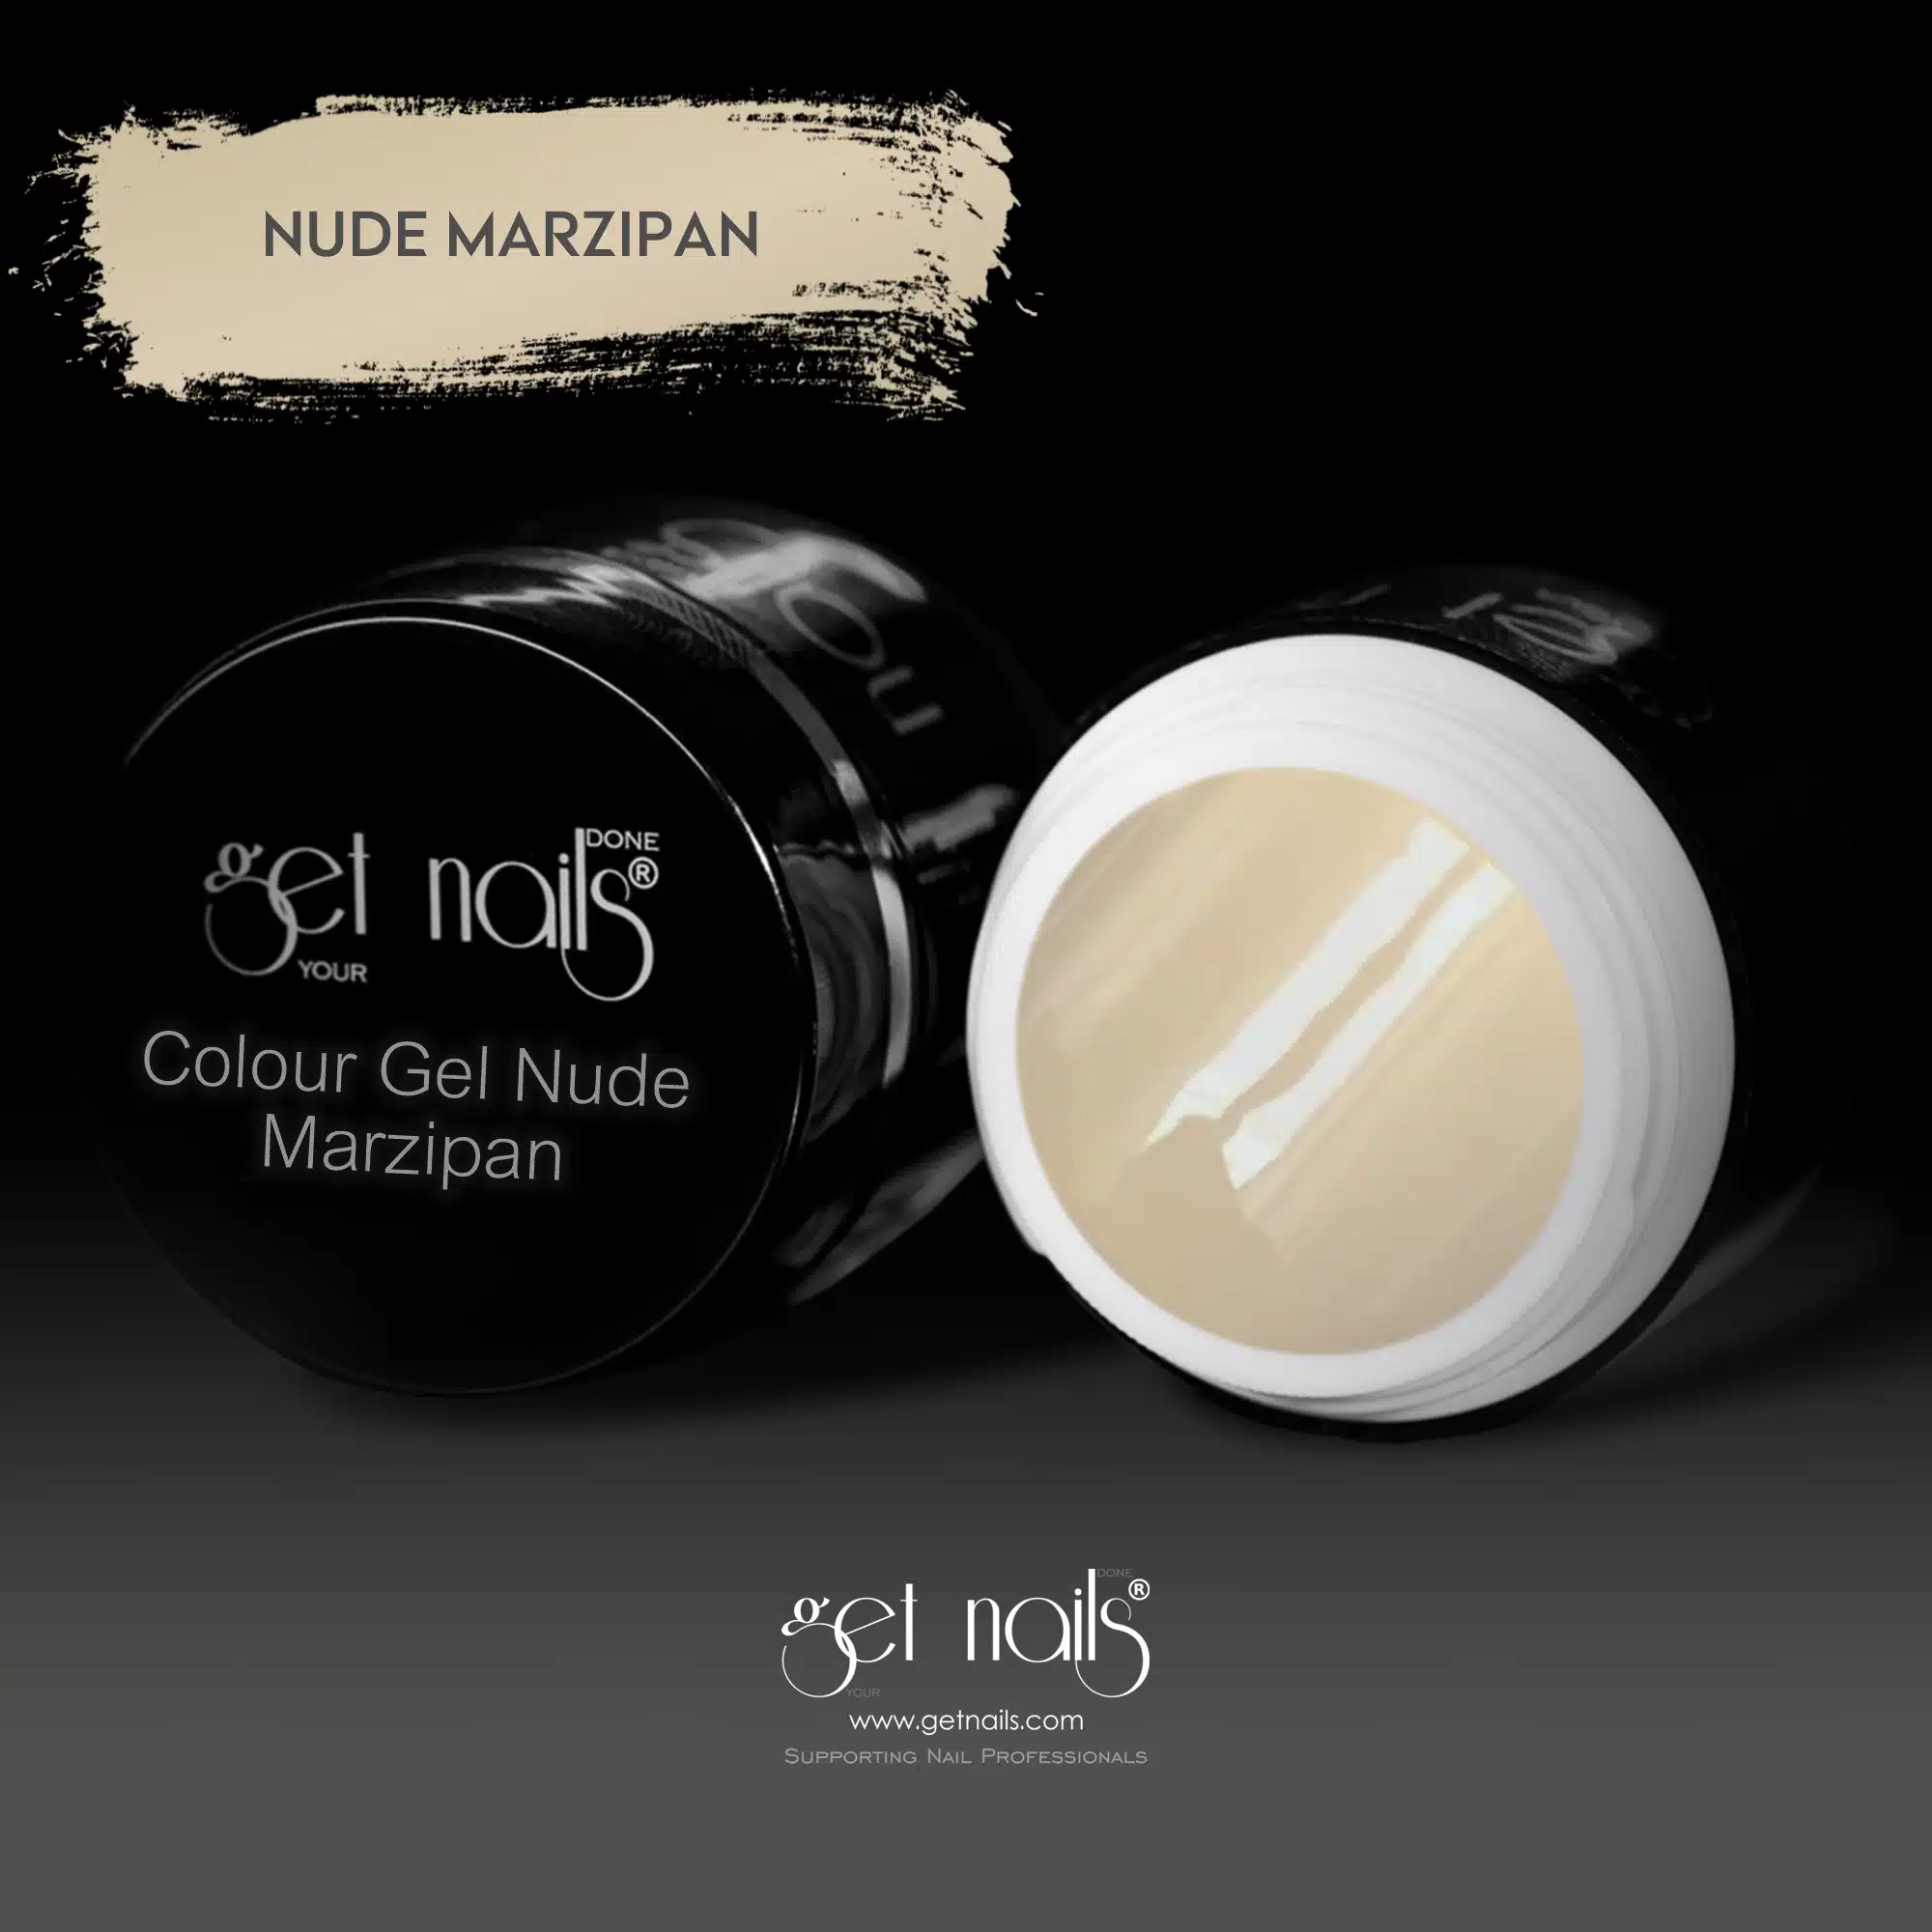 Get Nails Austria - Gel colorato Nude Marzapan 5g